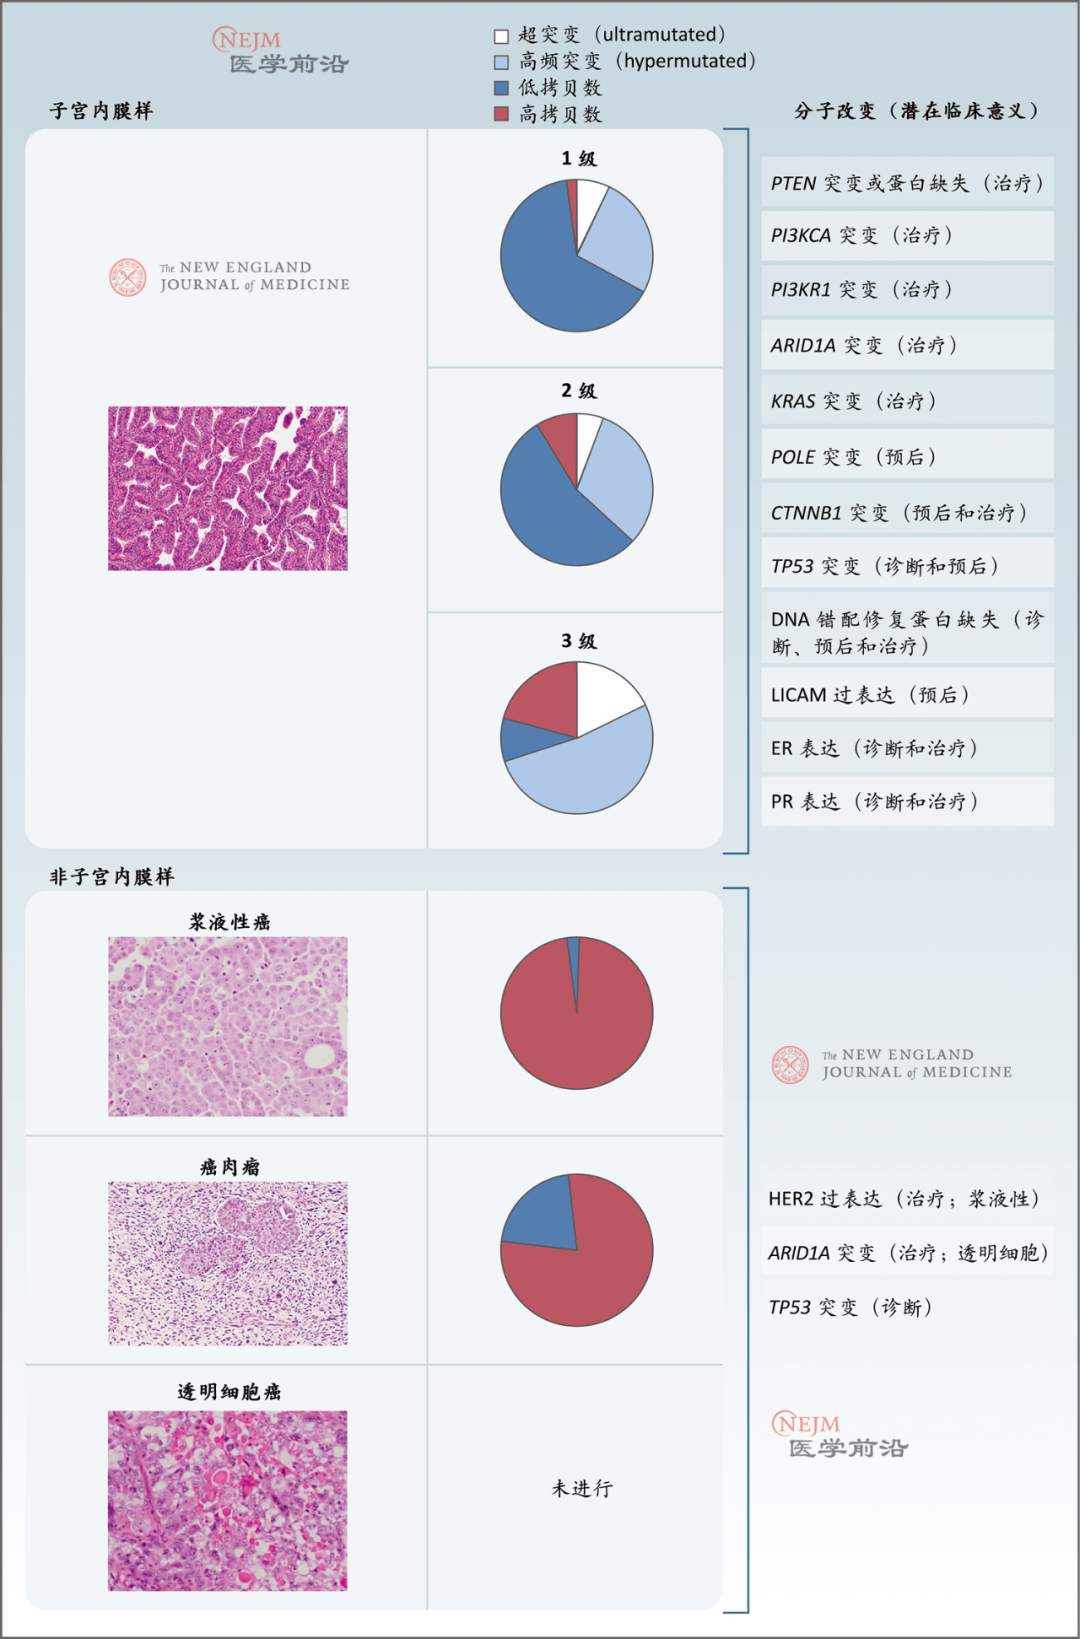 NCCN 乳腺癌临床实践指南（2021年中文第8版）_文库-报告厅